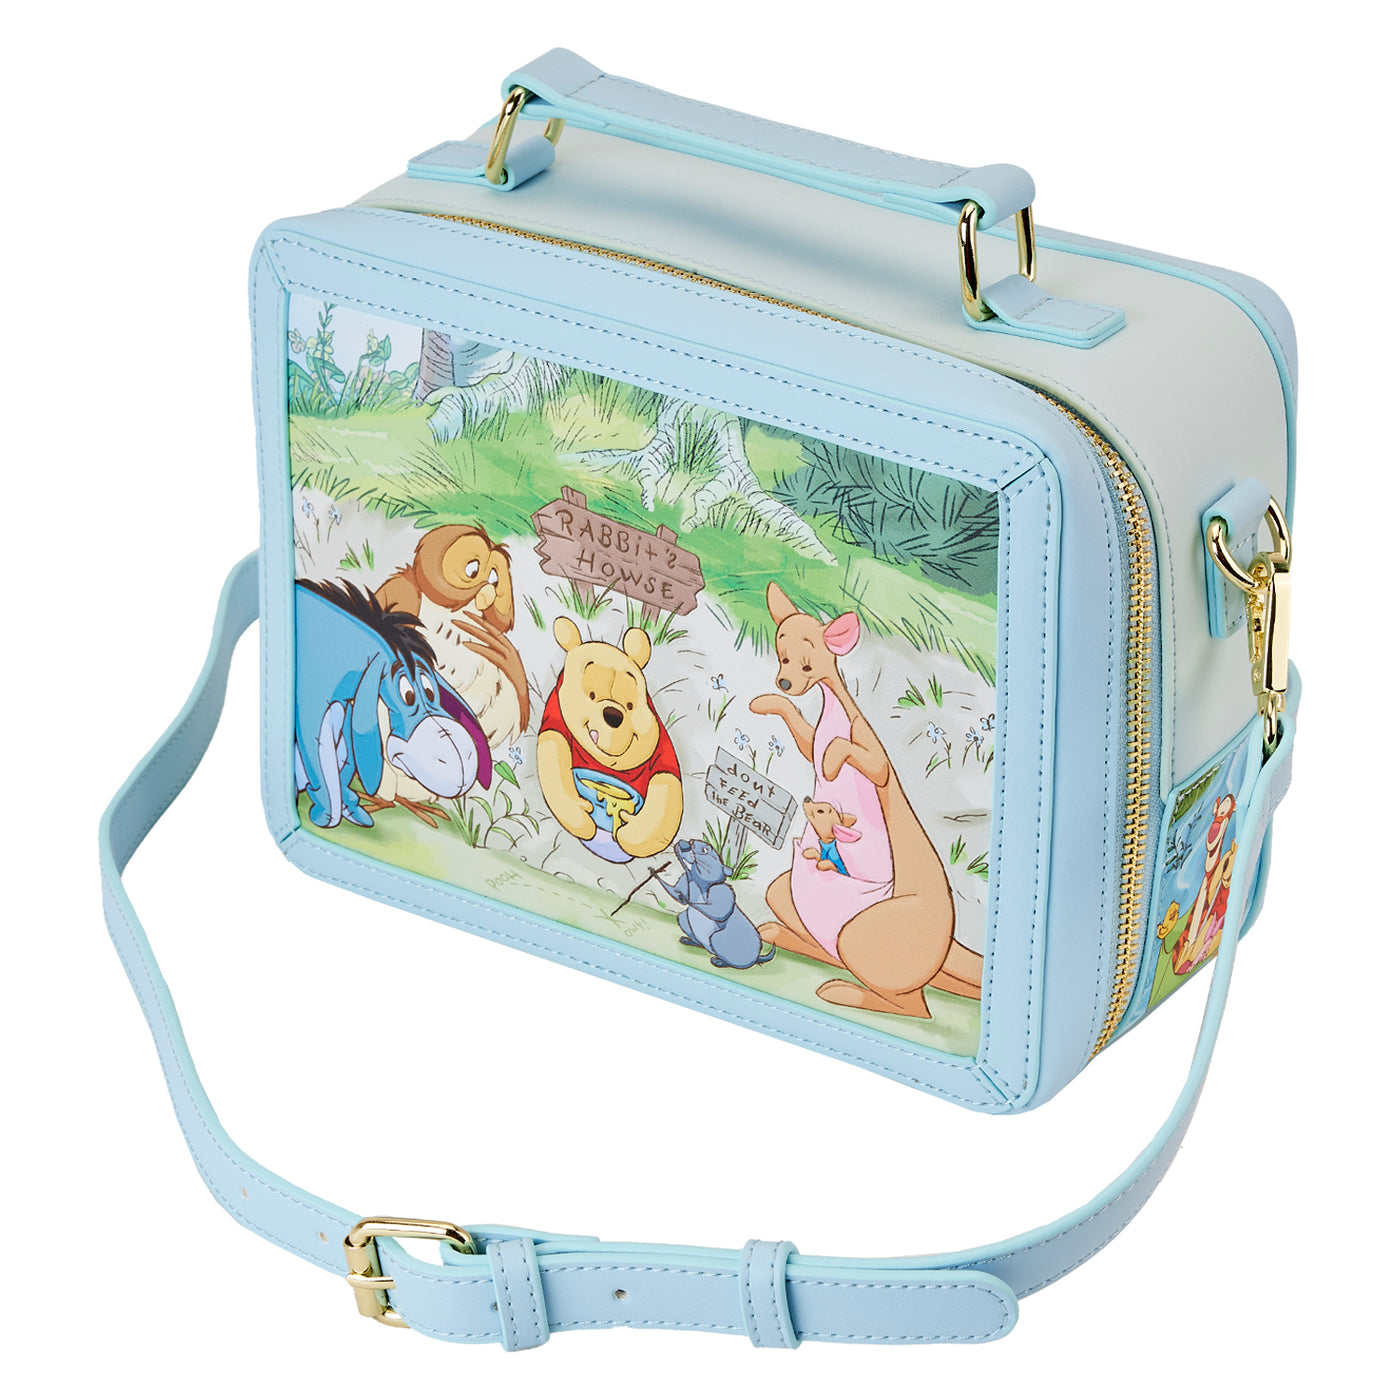 Disney Winnie the Pooh Lunchbox Crossbody